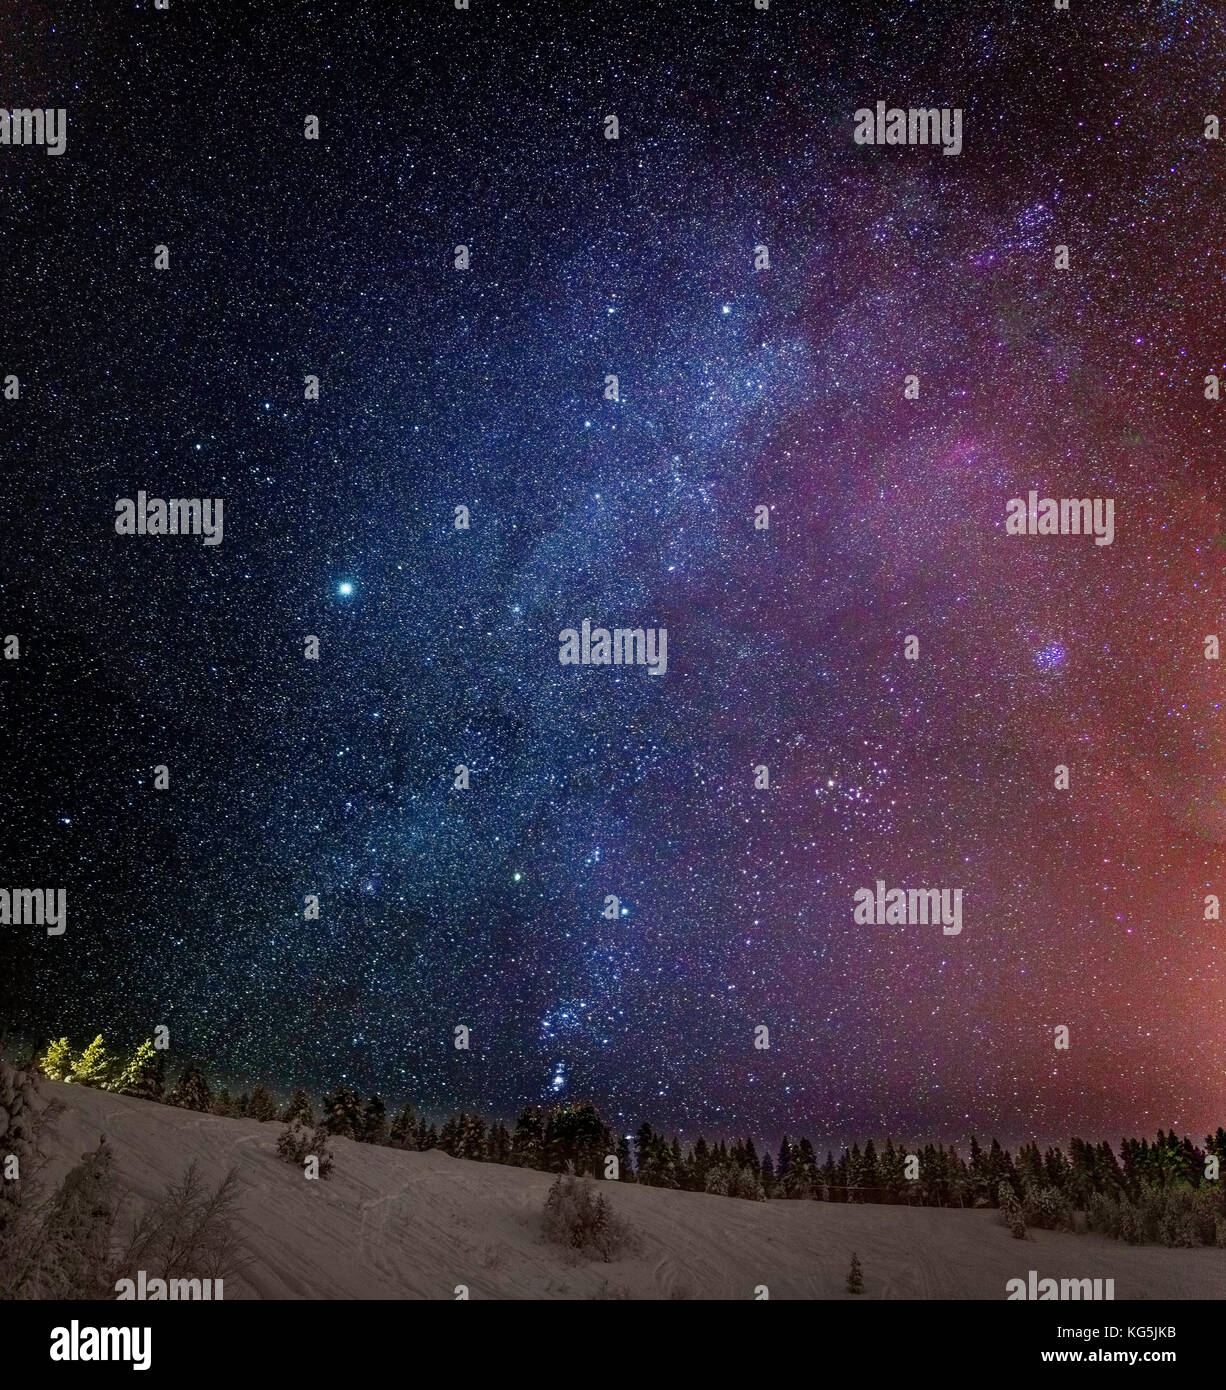 Vía Láctea Galaxia con Aurora Borealis o luces del Norte. Paisaje congelado, temperaturas frías de hasta -47°C, Laponia, Suecia Foto de stock